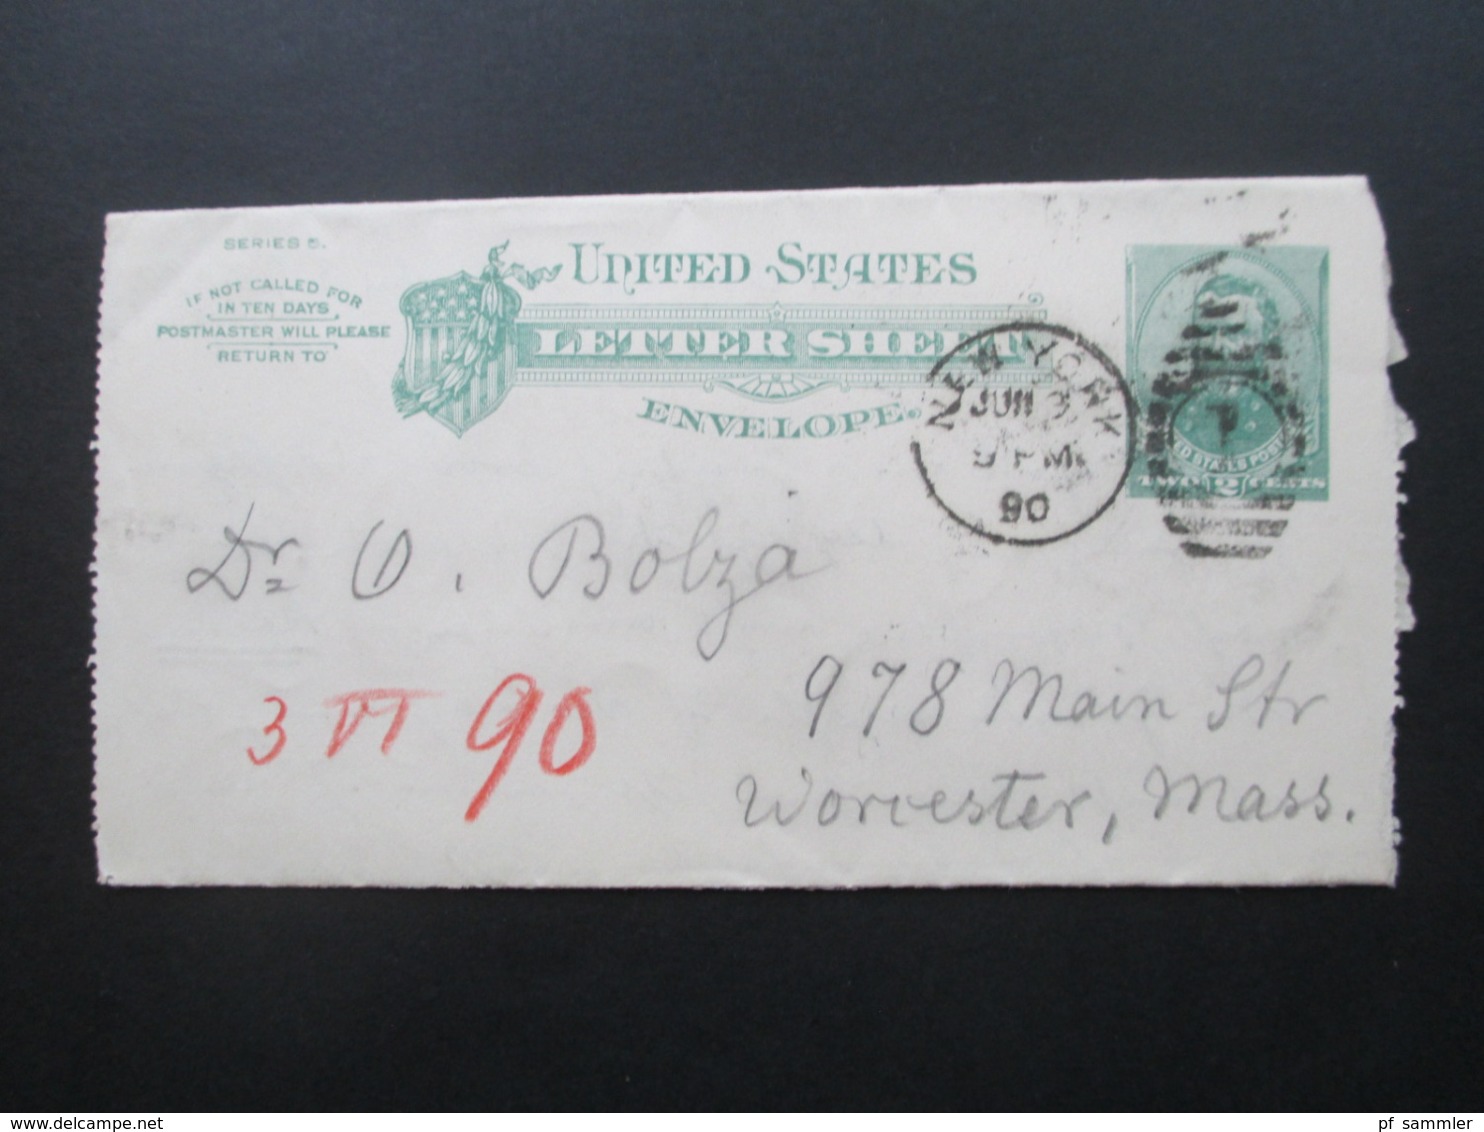 USA 1890 Letter Sheet Envelope New York - Worcester Mass Stempel Received Social Philately Dr. Oskar Bolza Mathematiker - Storia Postale